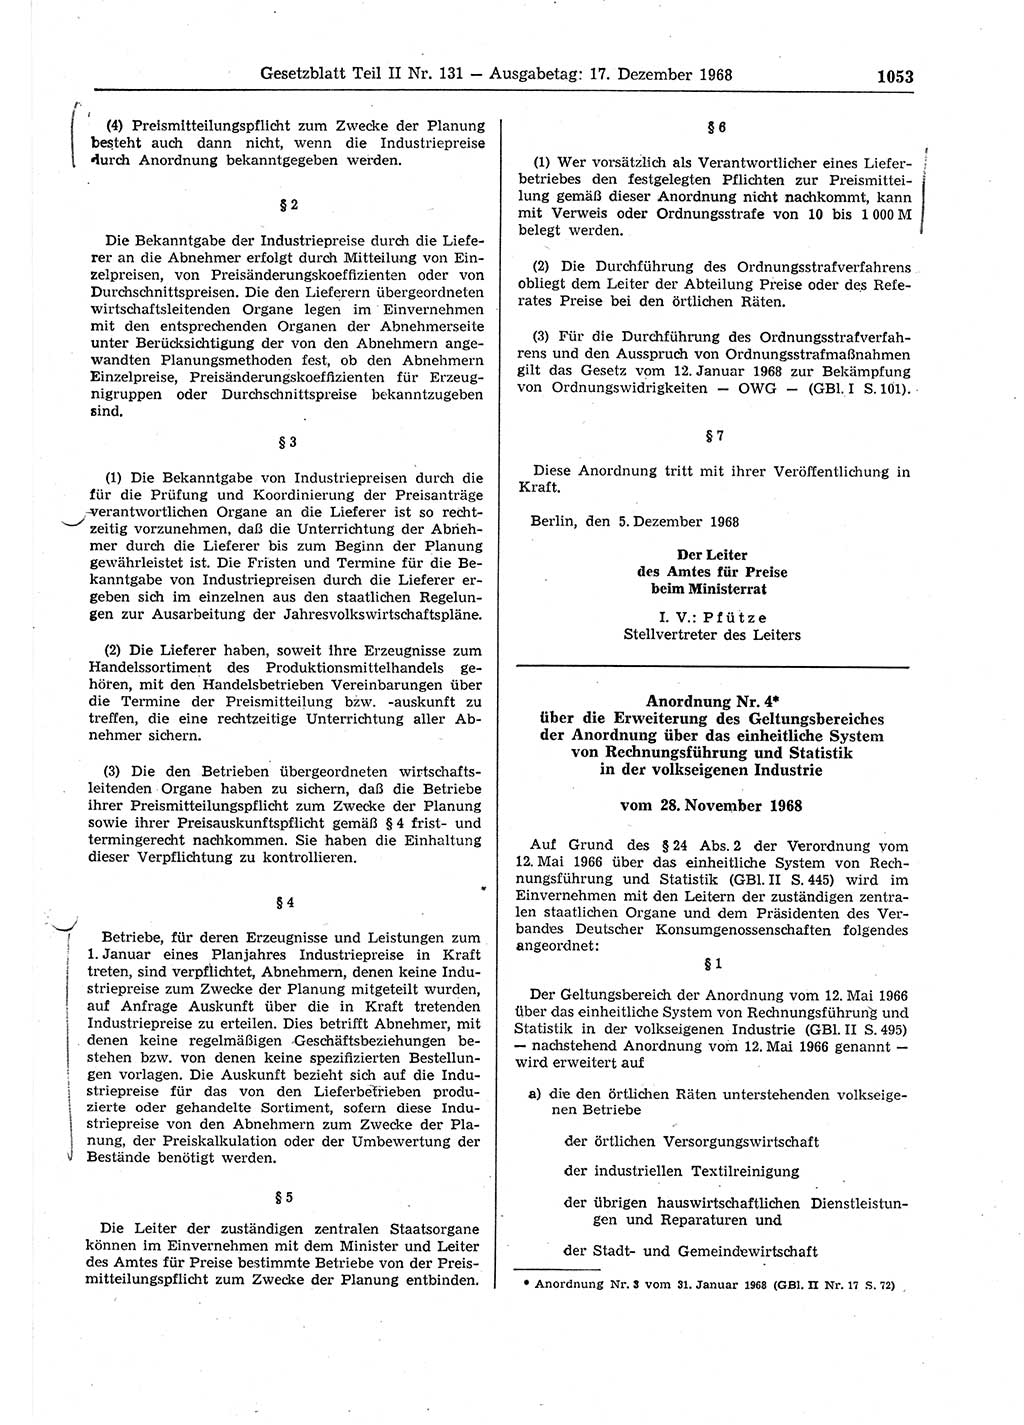 Gesetzblatt (GBl.) der Deutschen Demokratischen Republik (DDR) Teil ⅠⅠ 1968, Seite 1053 (GBl. DDR ⅠⅠ 1968, S. 1053)